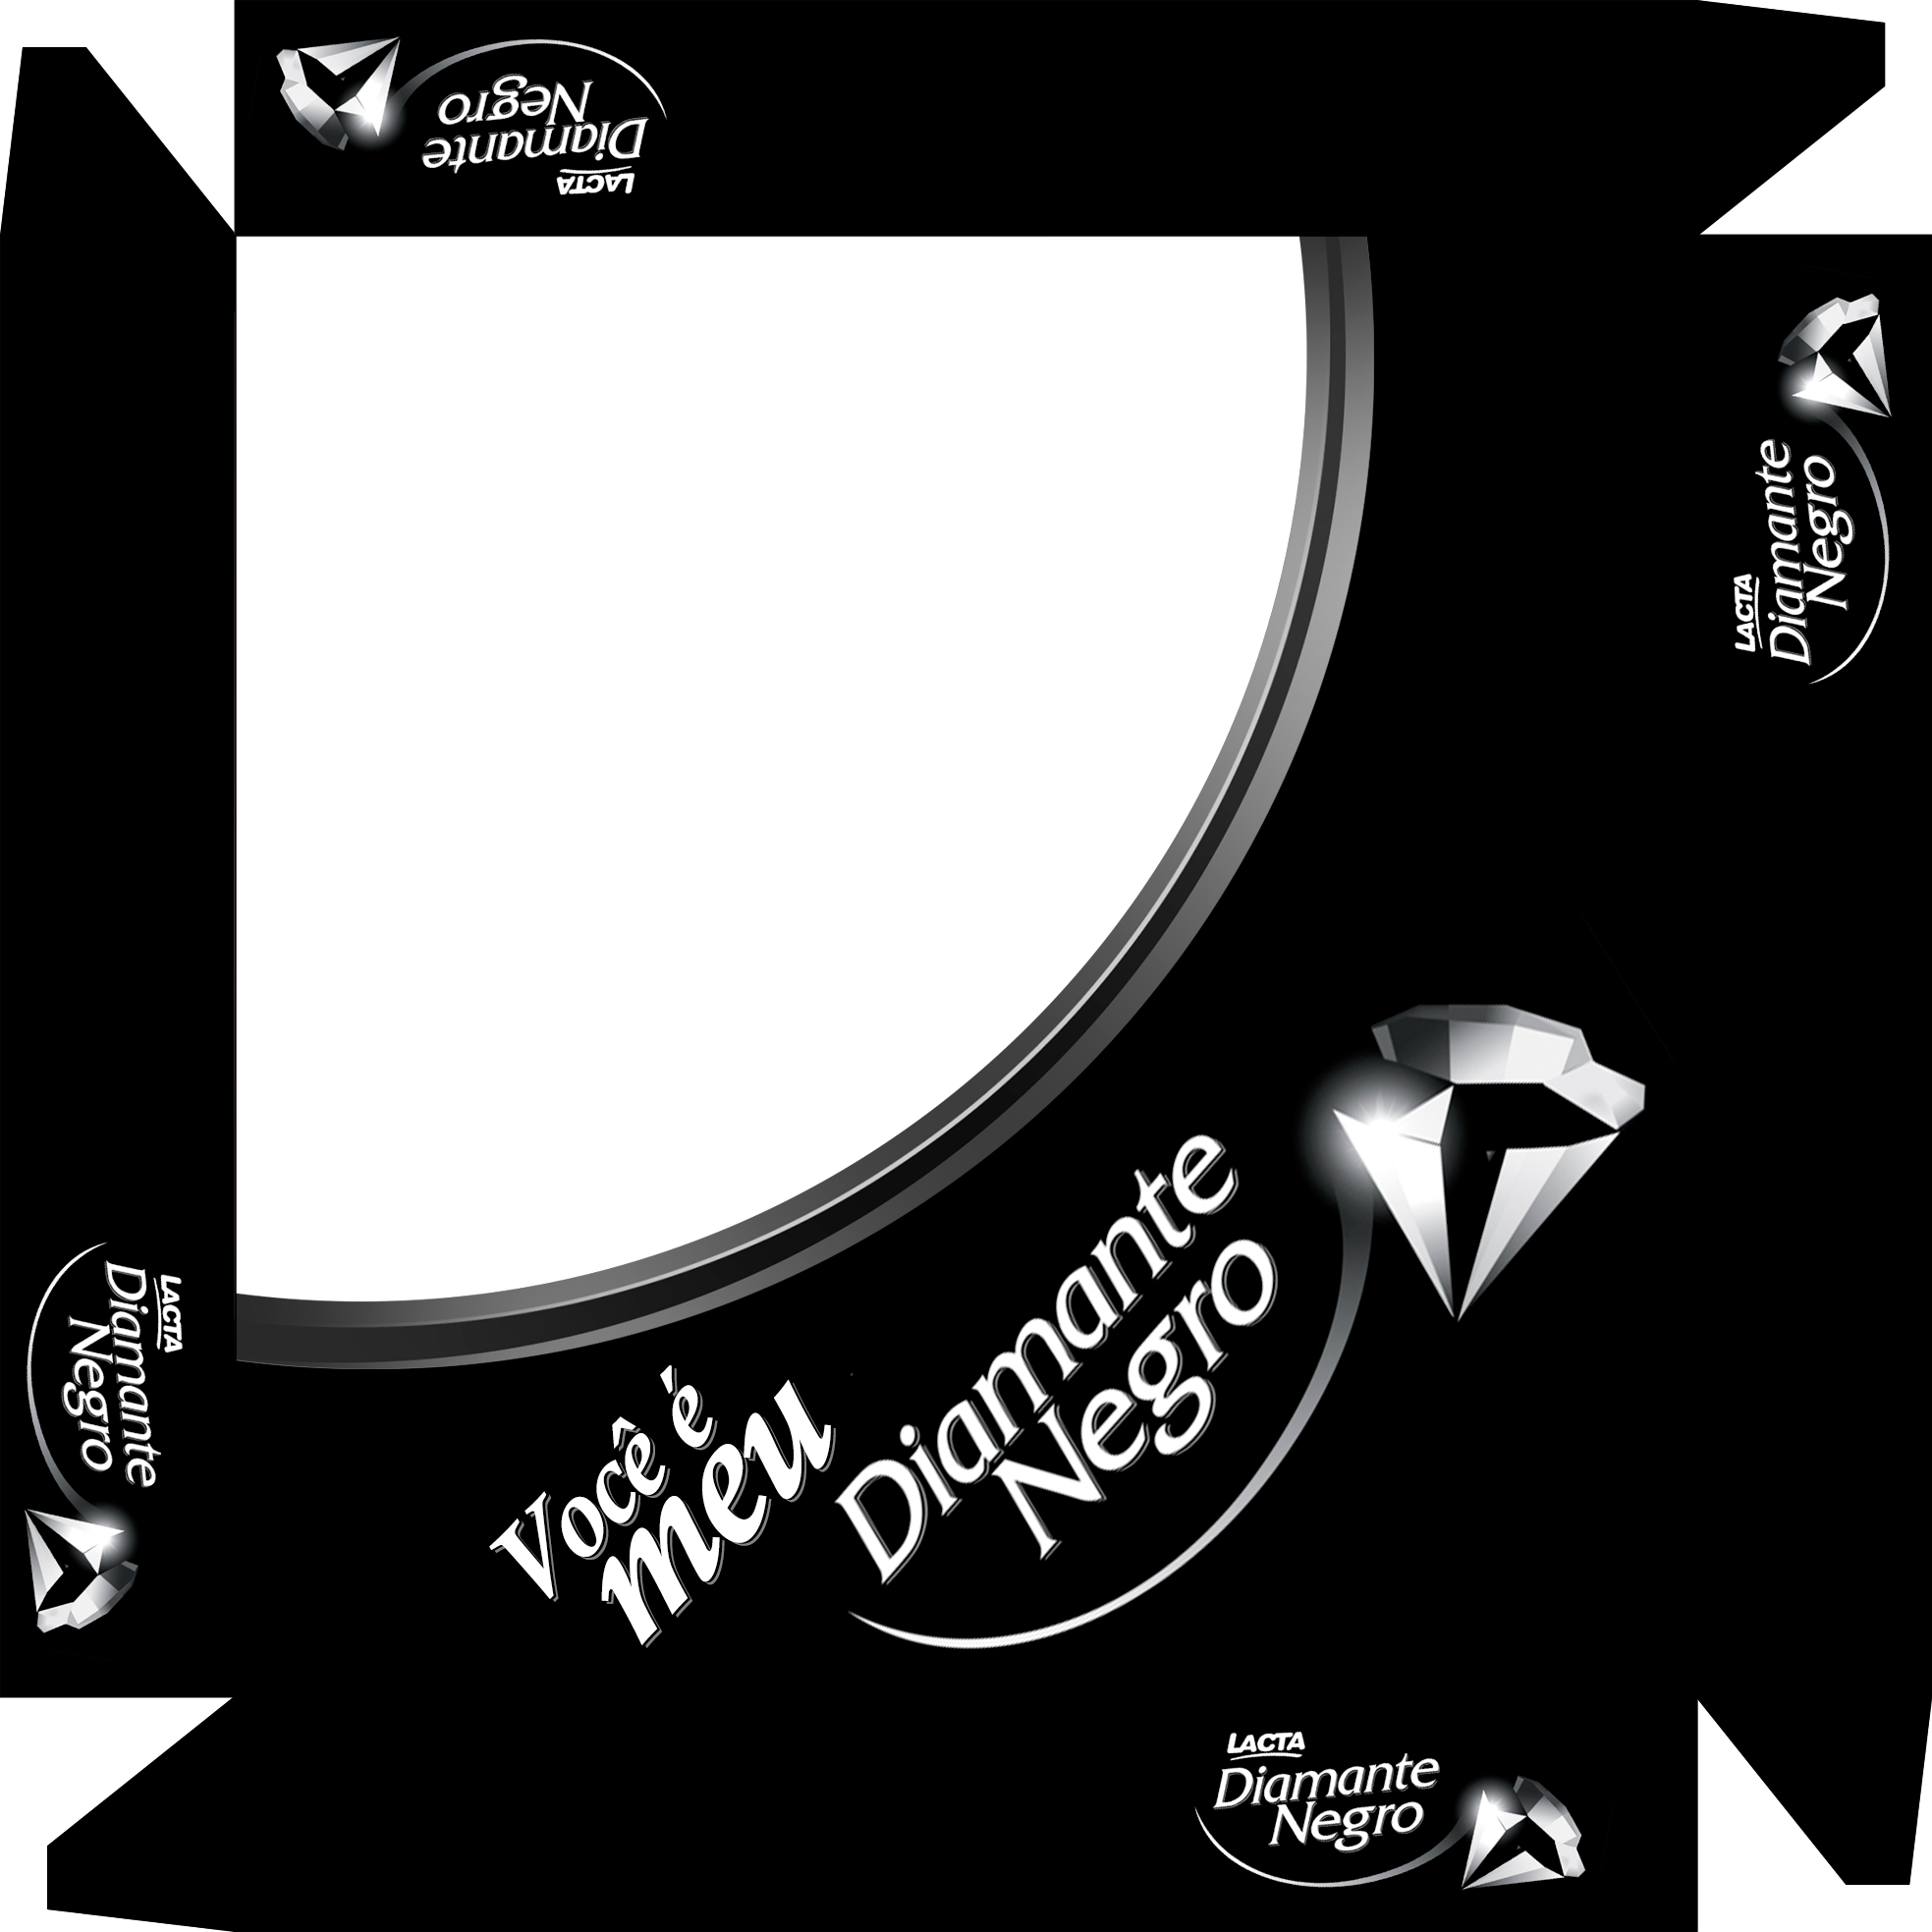 Caixa De Bombom Dia Dos Namorados Diamante Negro - Lacta Diamante Negro 150g (1967x1967)